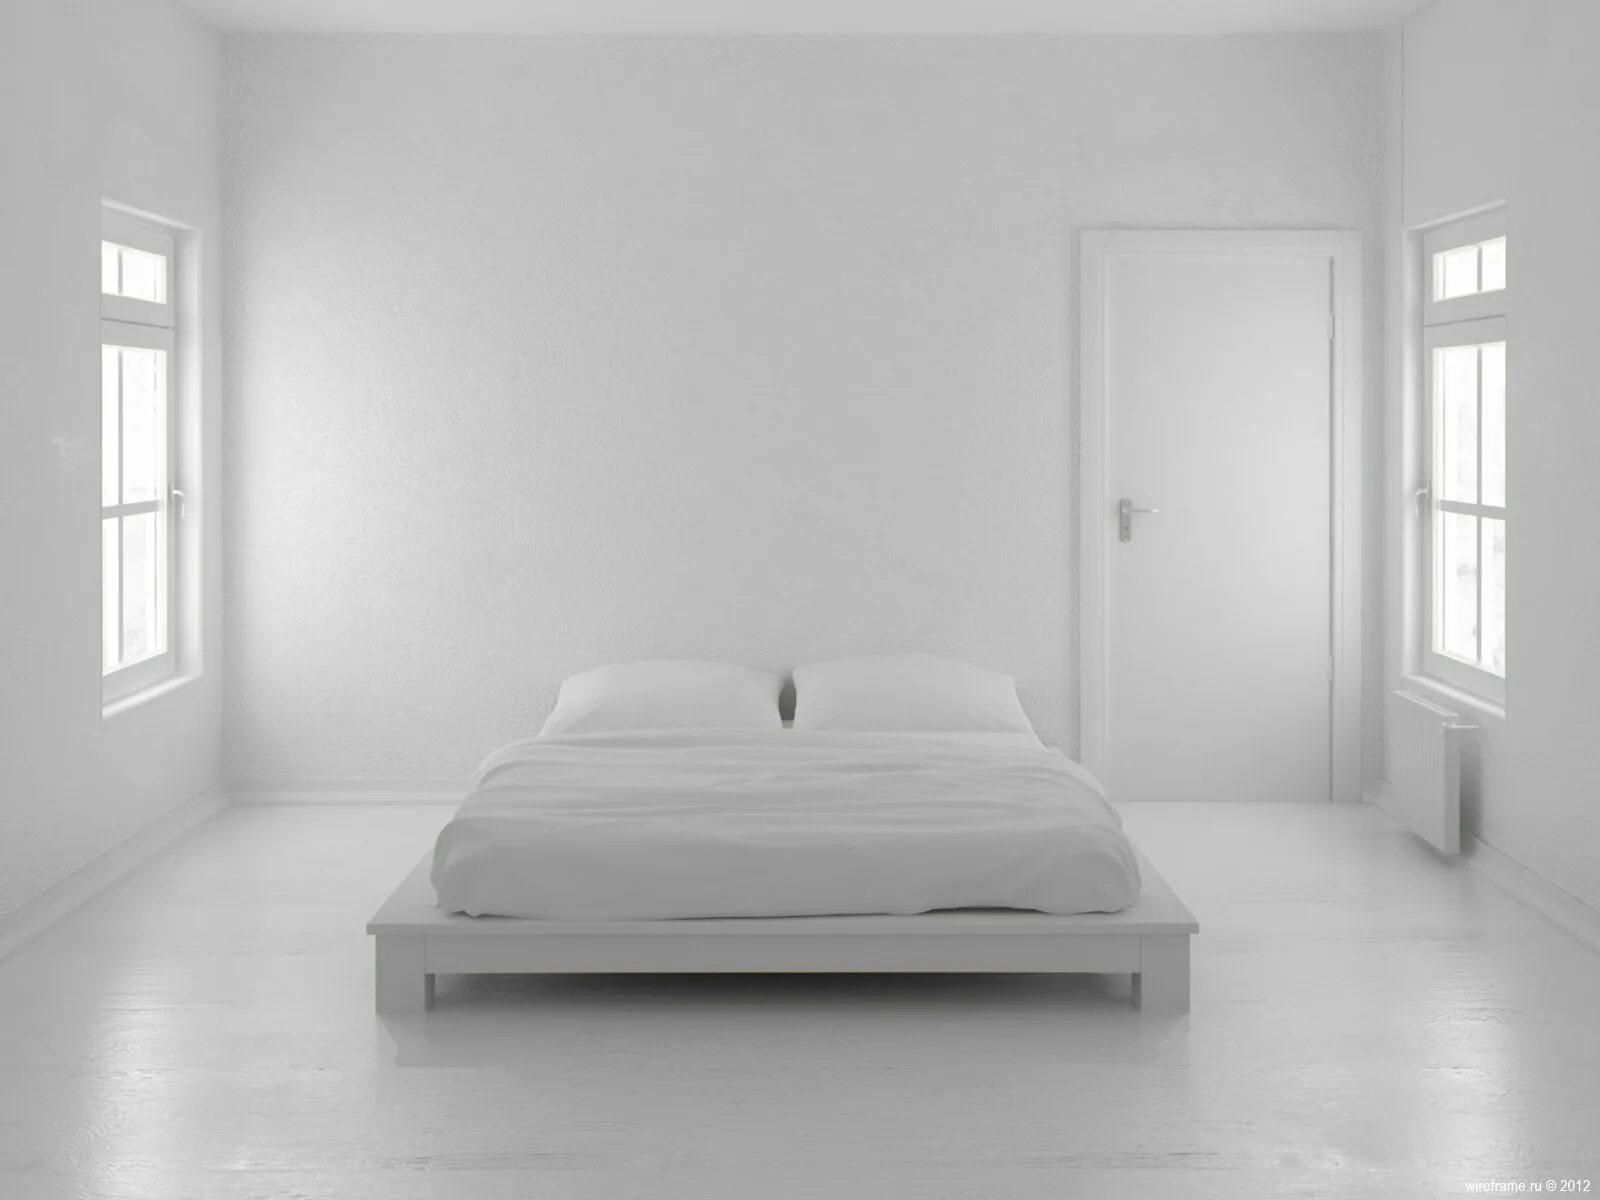 Белая комната. Белый ком. Комната с белыми стенами. Белая спальня Минимализм. Идеально белый цвет